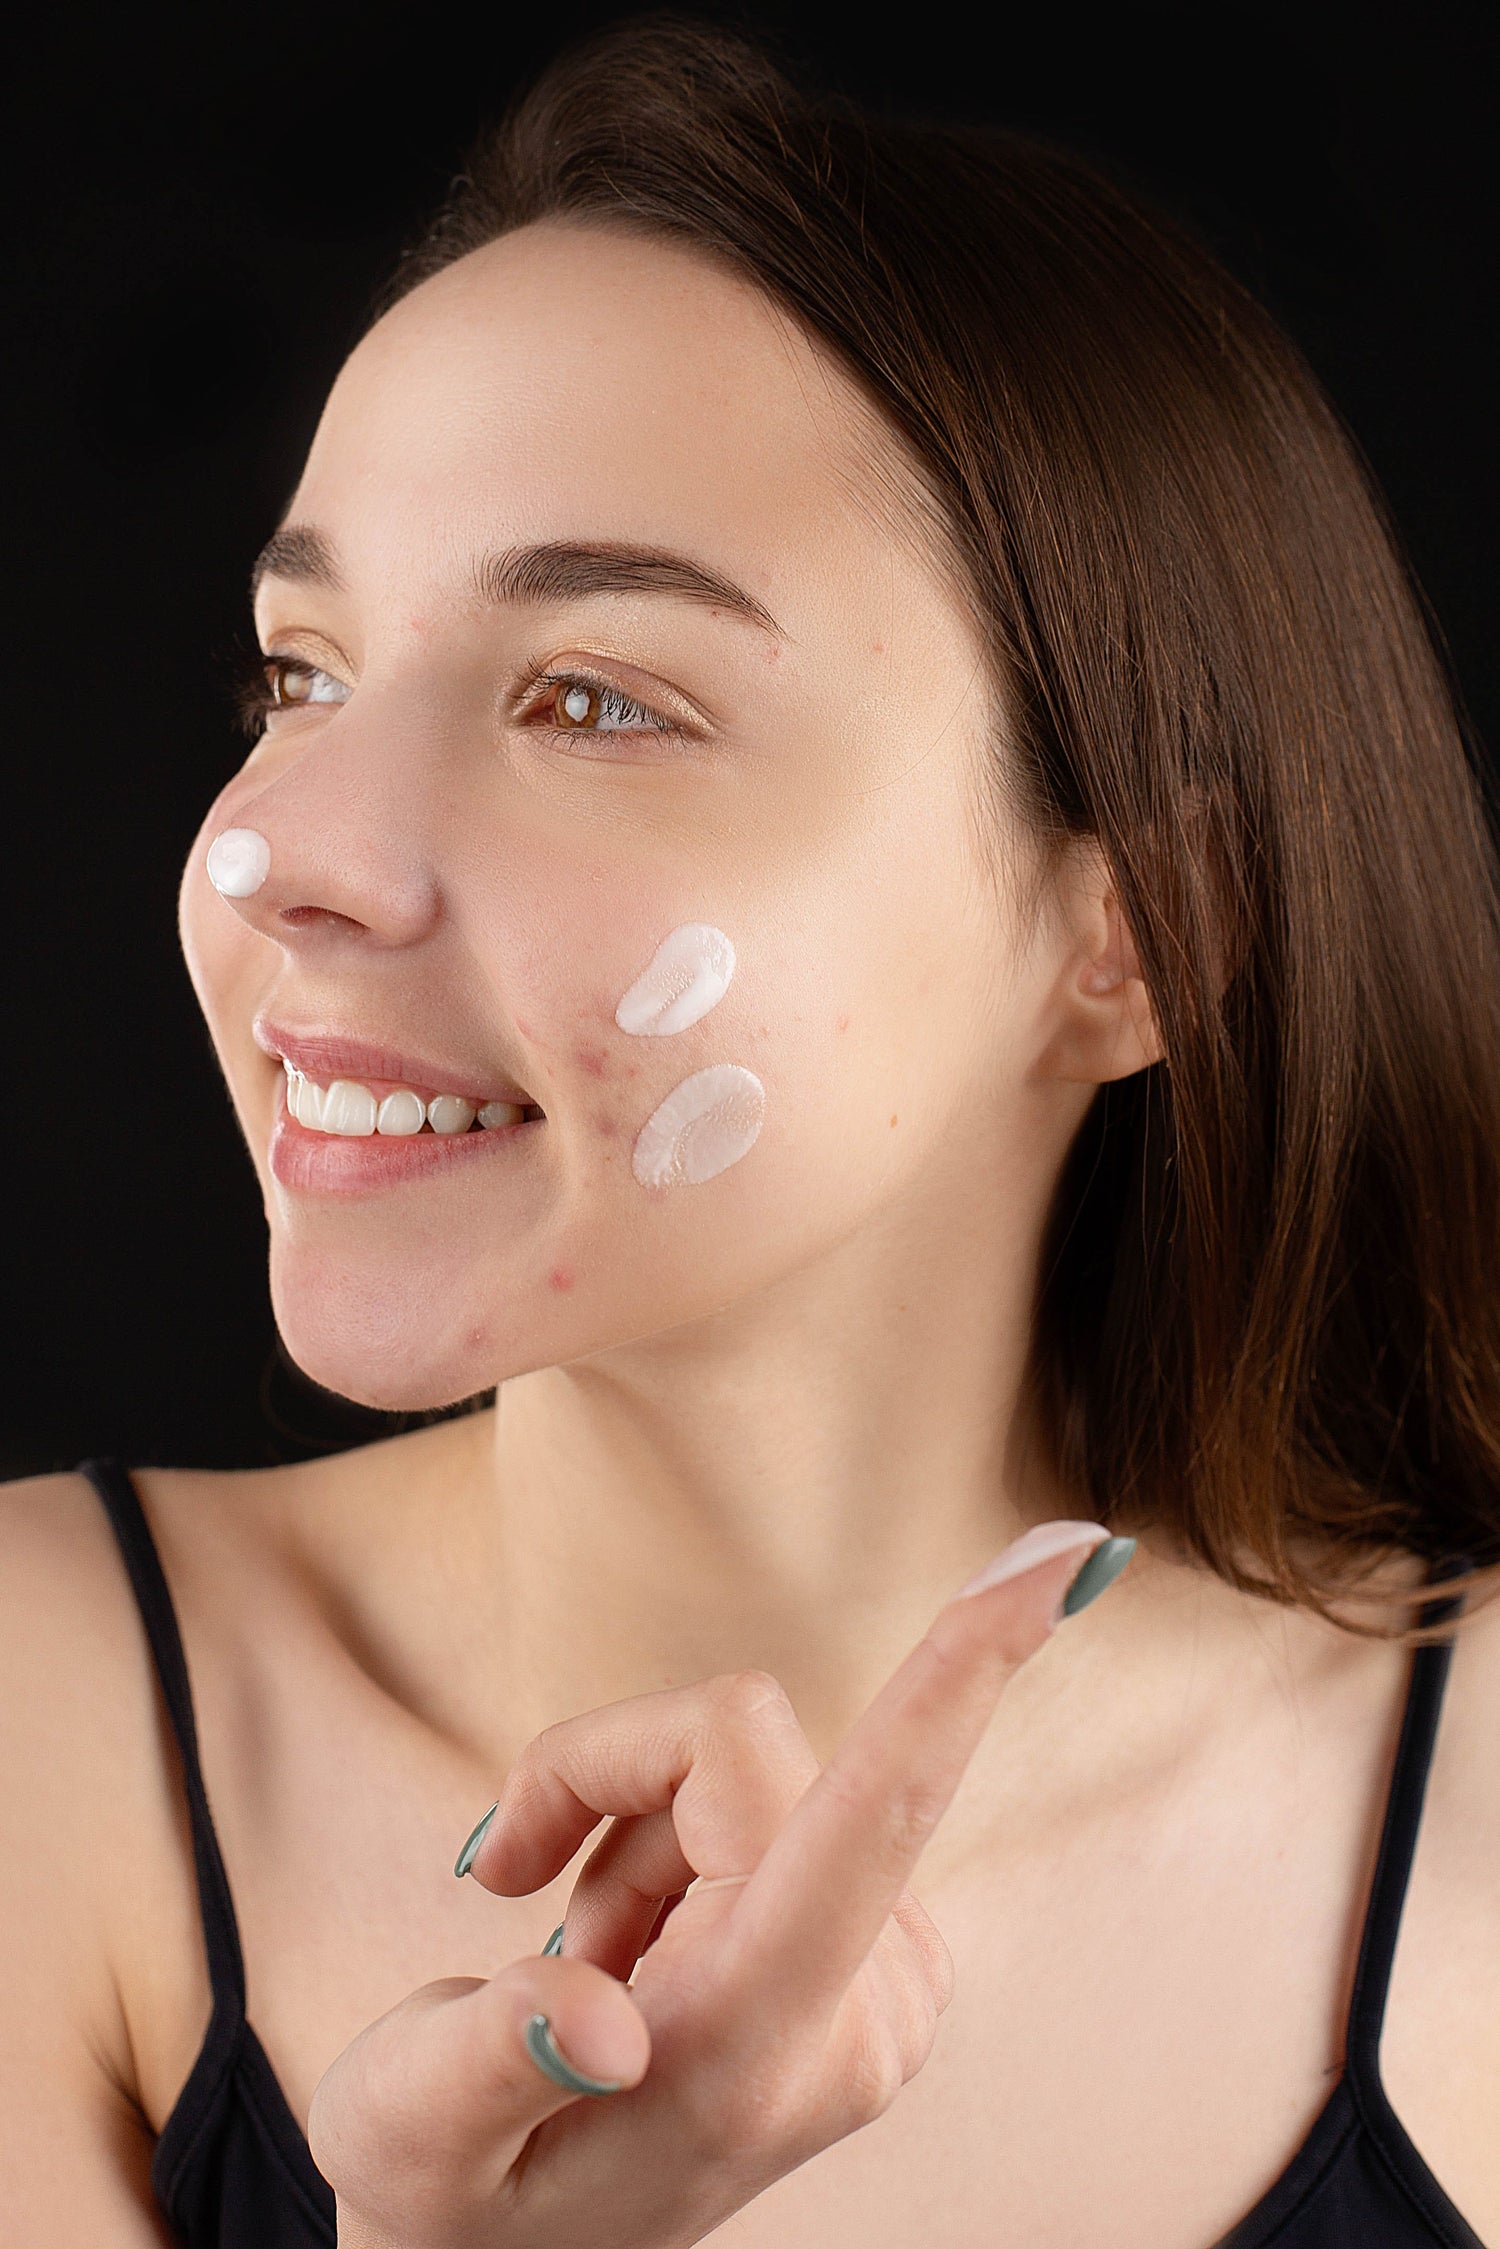 Detergente viso per acne: come scegliere il prodotto giusto